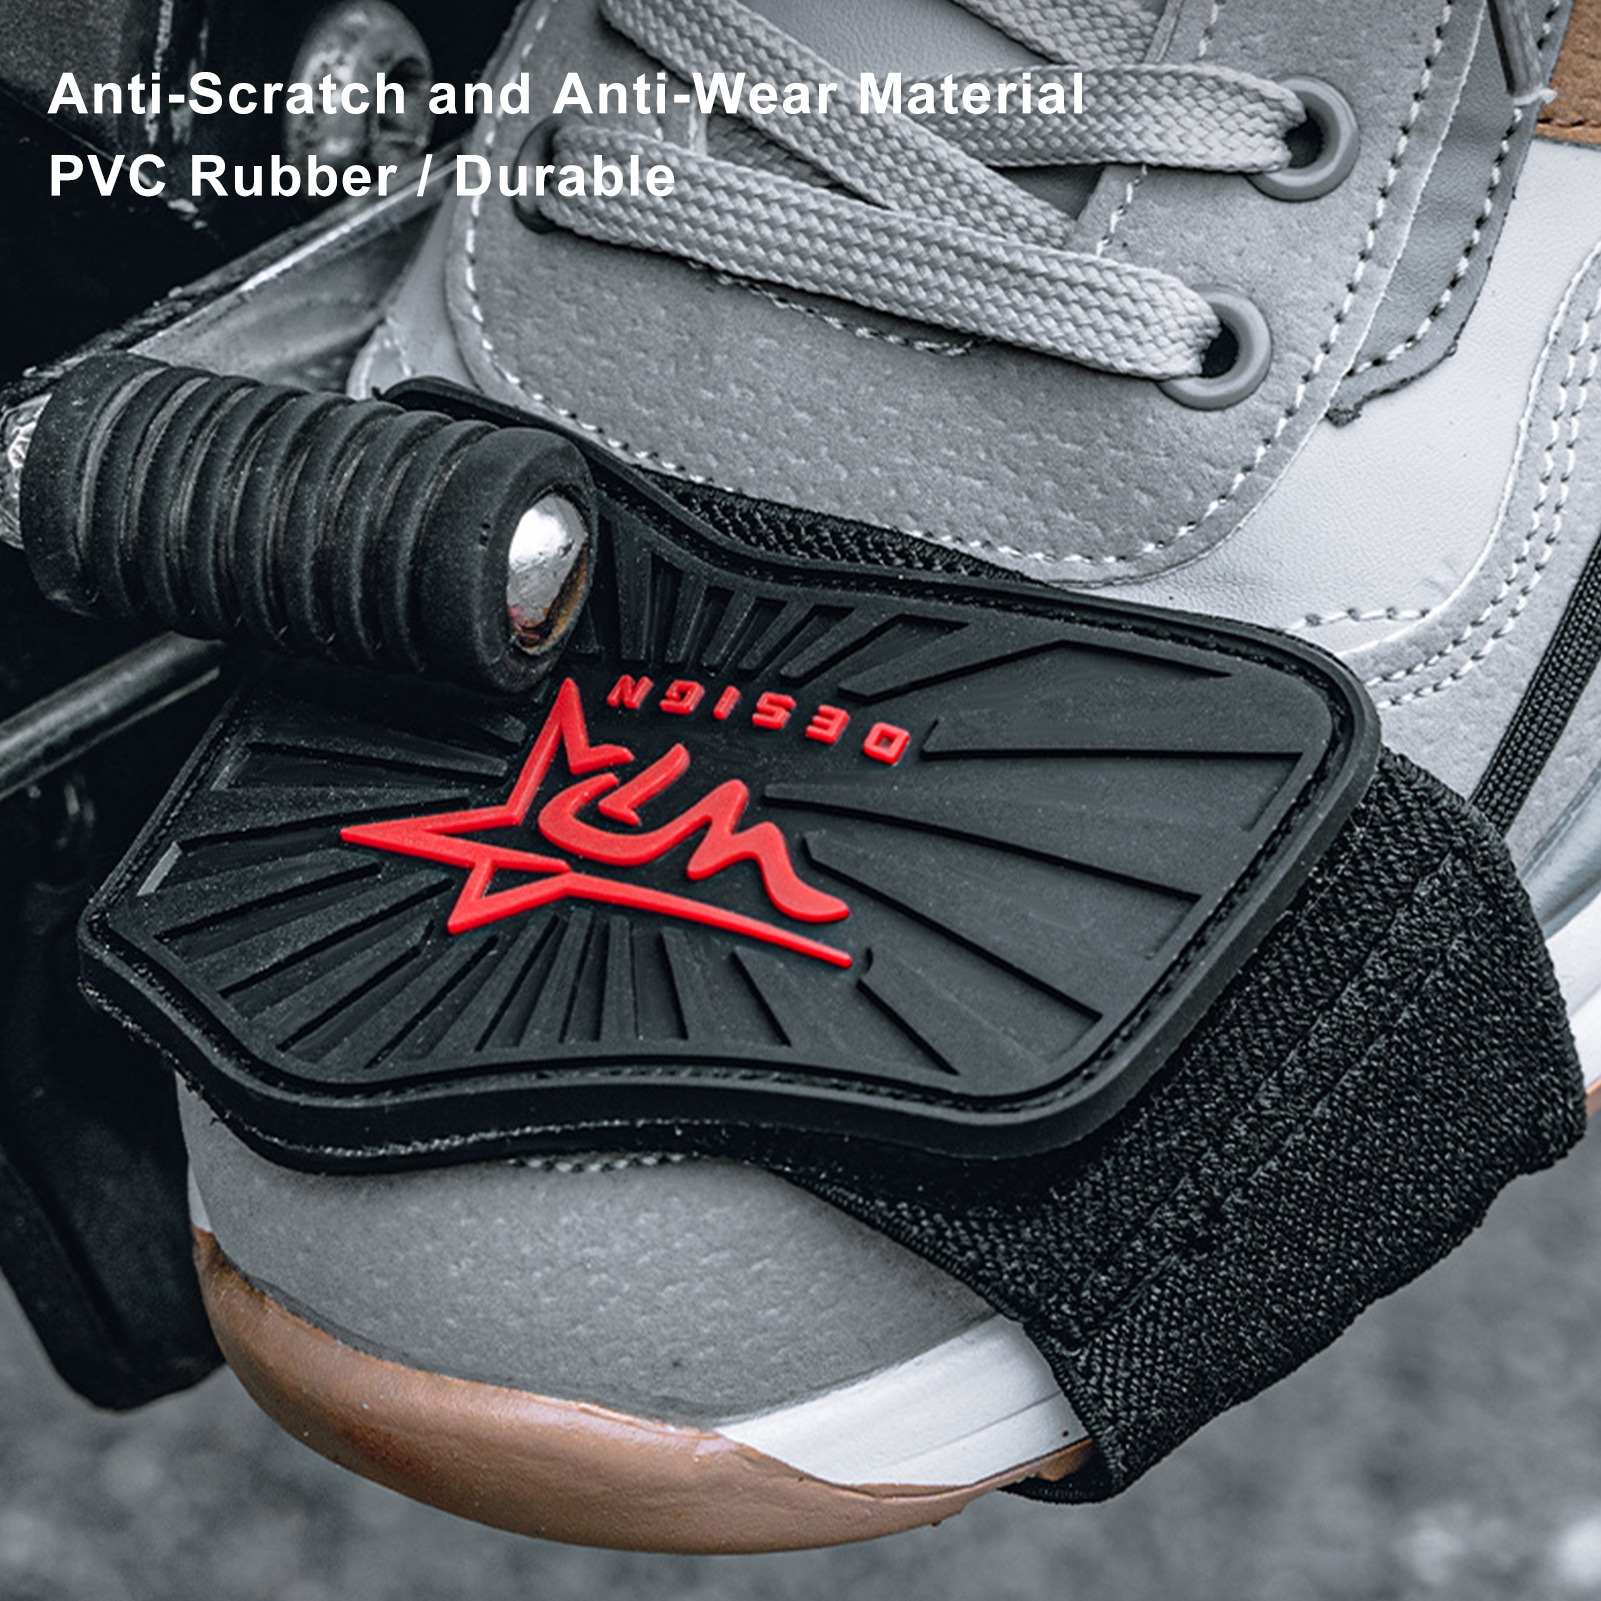 Moto-Cubre Calzado Proteccion Zapato - Protección calzado para moto - Cubre  Calzado Oferta $4.500 - Producto Nacional Stock Disponible Protector de  zapatos para motos, hecho en Chile. Cuero, resistente al desgaste, correa